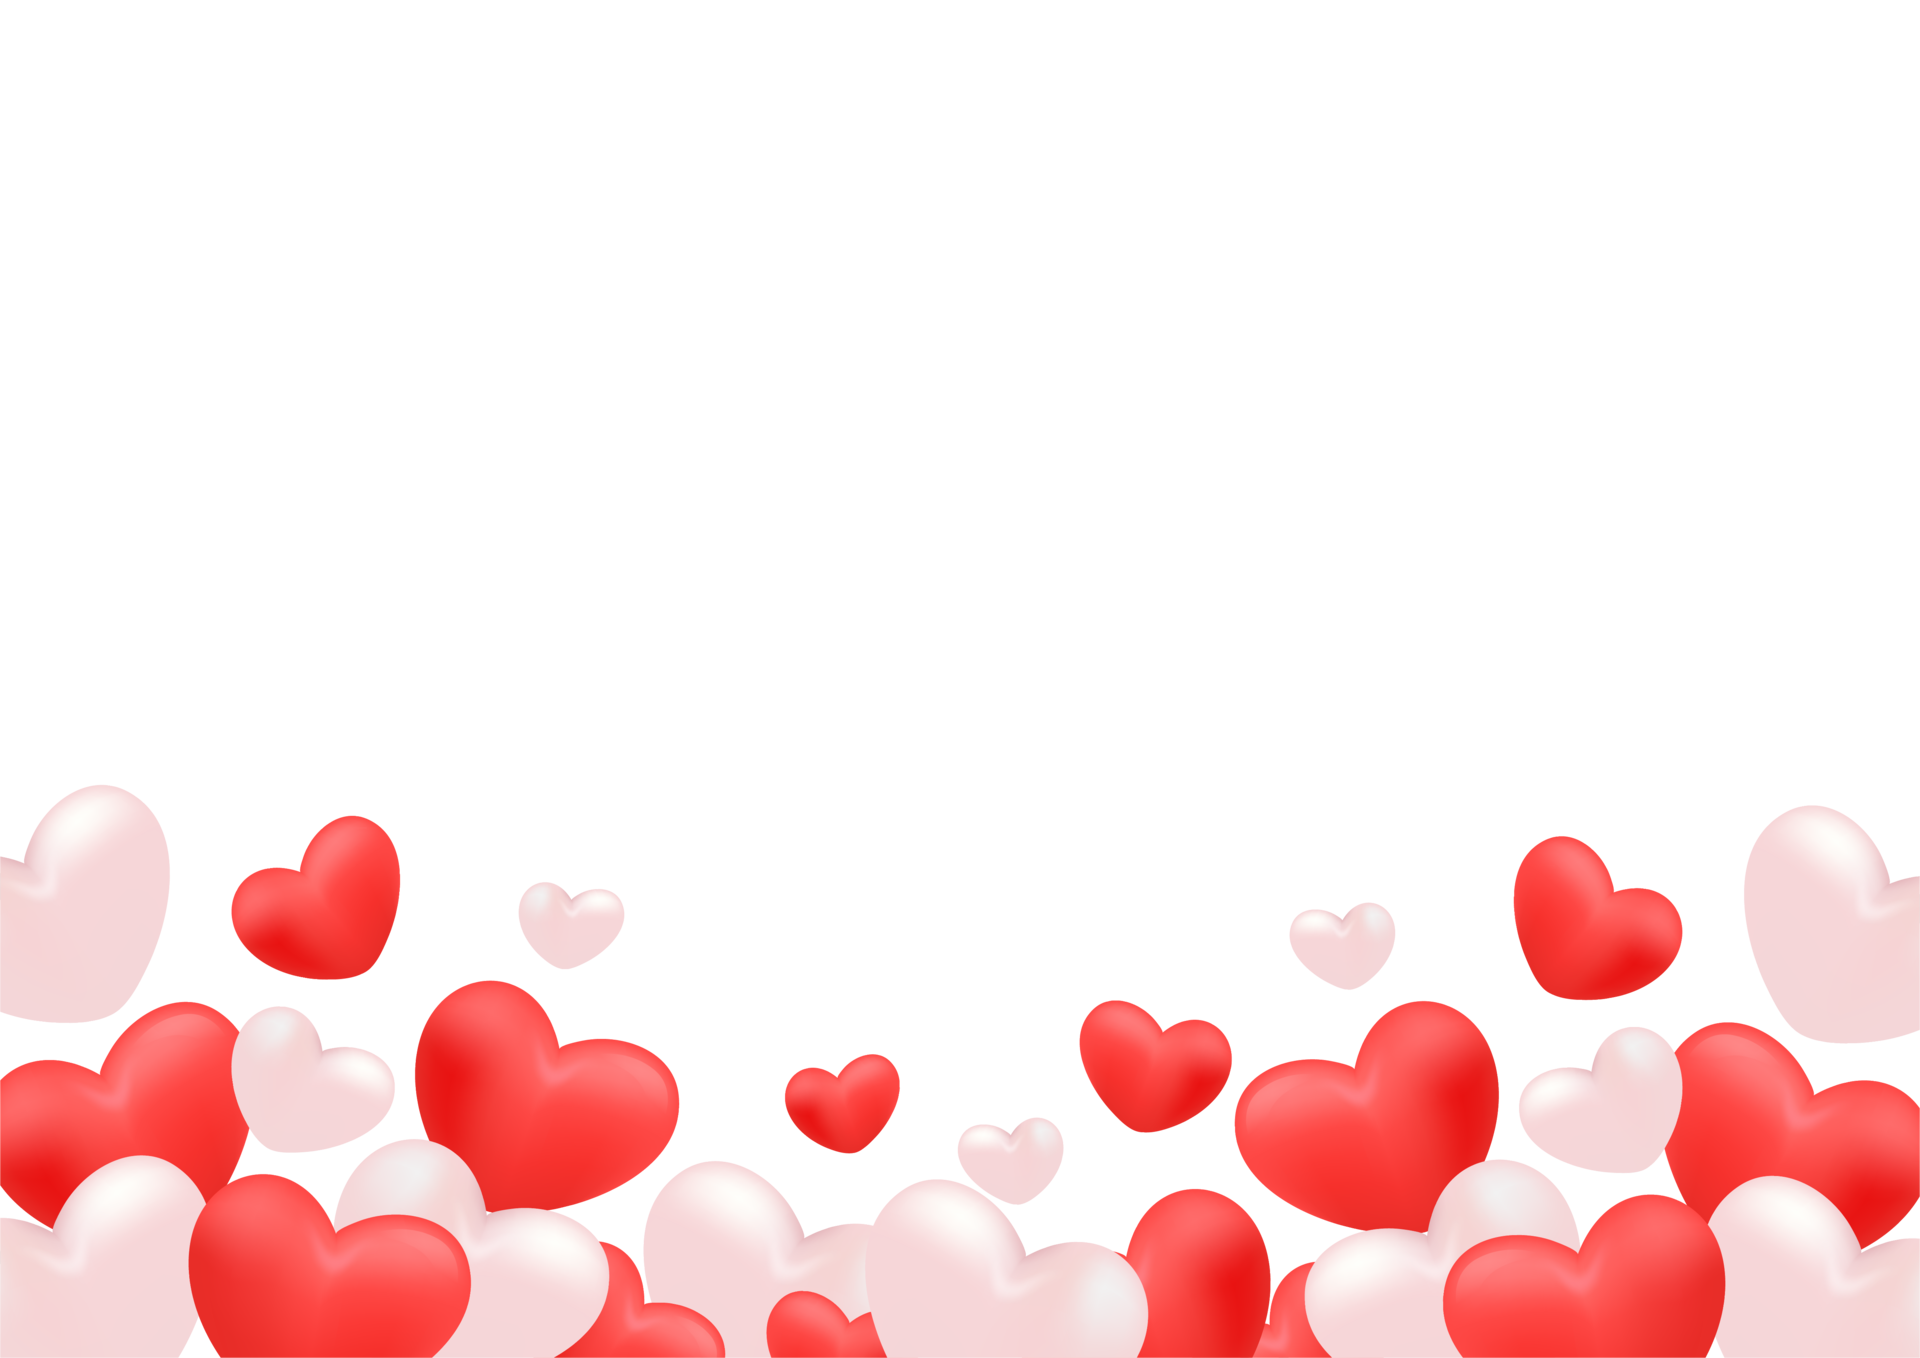 Hãy để khung Hearts Border Frame Valentines Day PNG làm tăng sự lãng mạn và tình yêu của bạn lên một tầm cao mới trong ngày lễ Tình nhân. Hoàn toàn miễn phí và đầy đủ, đảm bảo sẽ làm bạn và người thương cảm thấy vô cùng hạnh phúc, tràn đầy tình yêu say đắm.